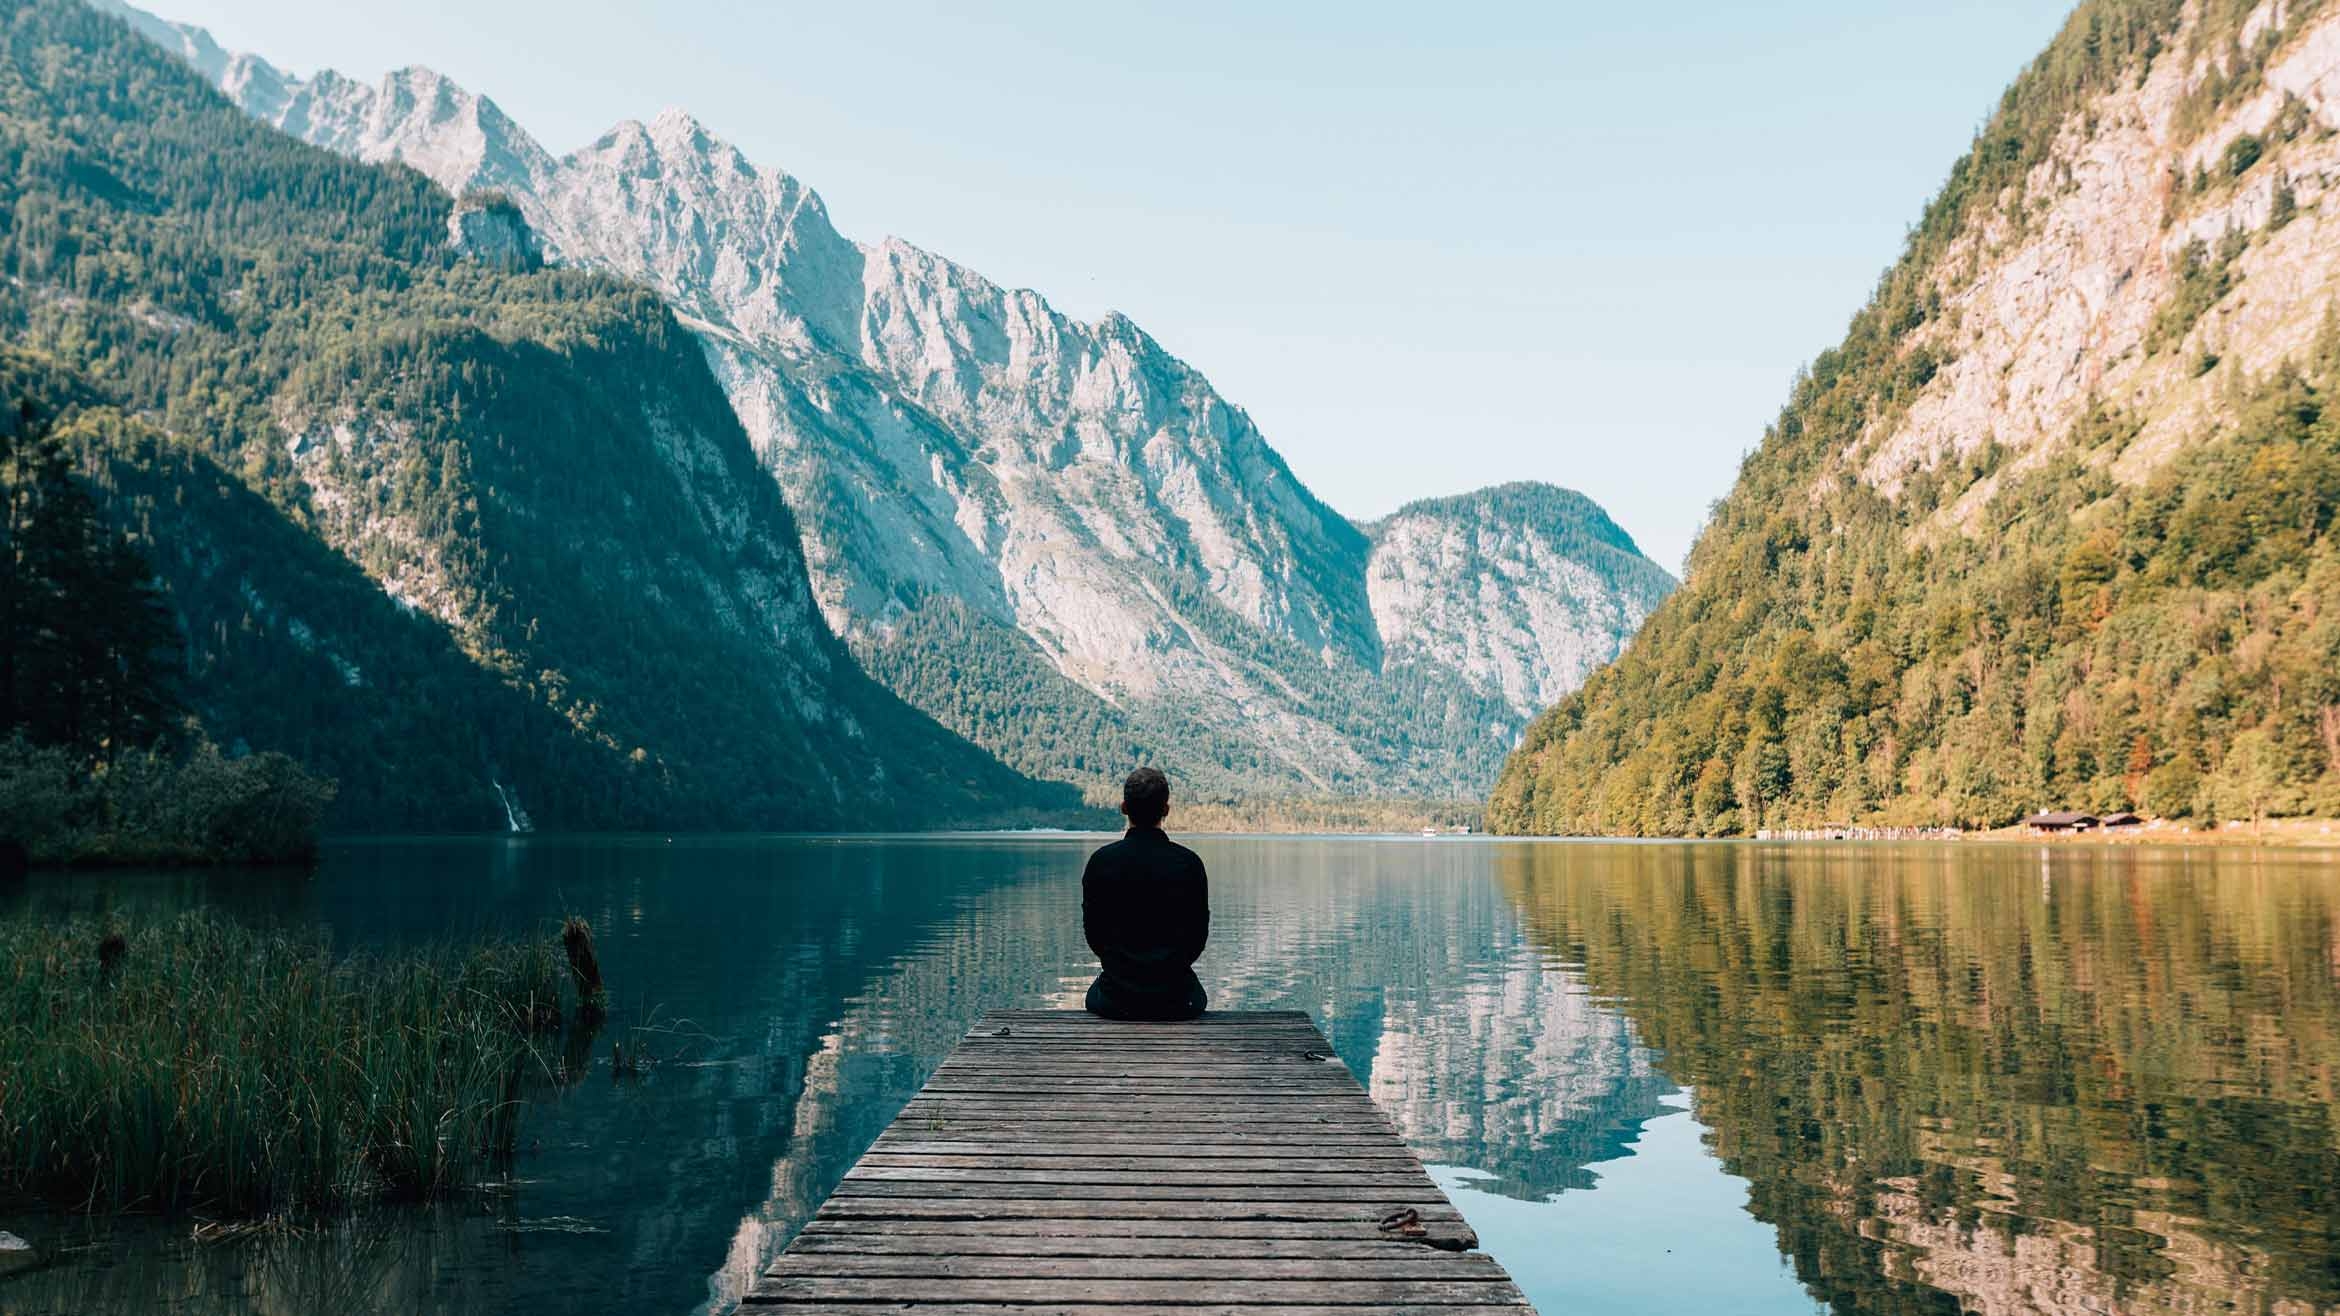 In der Ruhe liegt die Kraft: Immer mehr Menschen nutzen Meditations-Apps, um sich vom Alltagsstress zu erholen. Das nutzen Verlage, die eigene Digital-Dienste starten